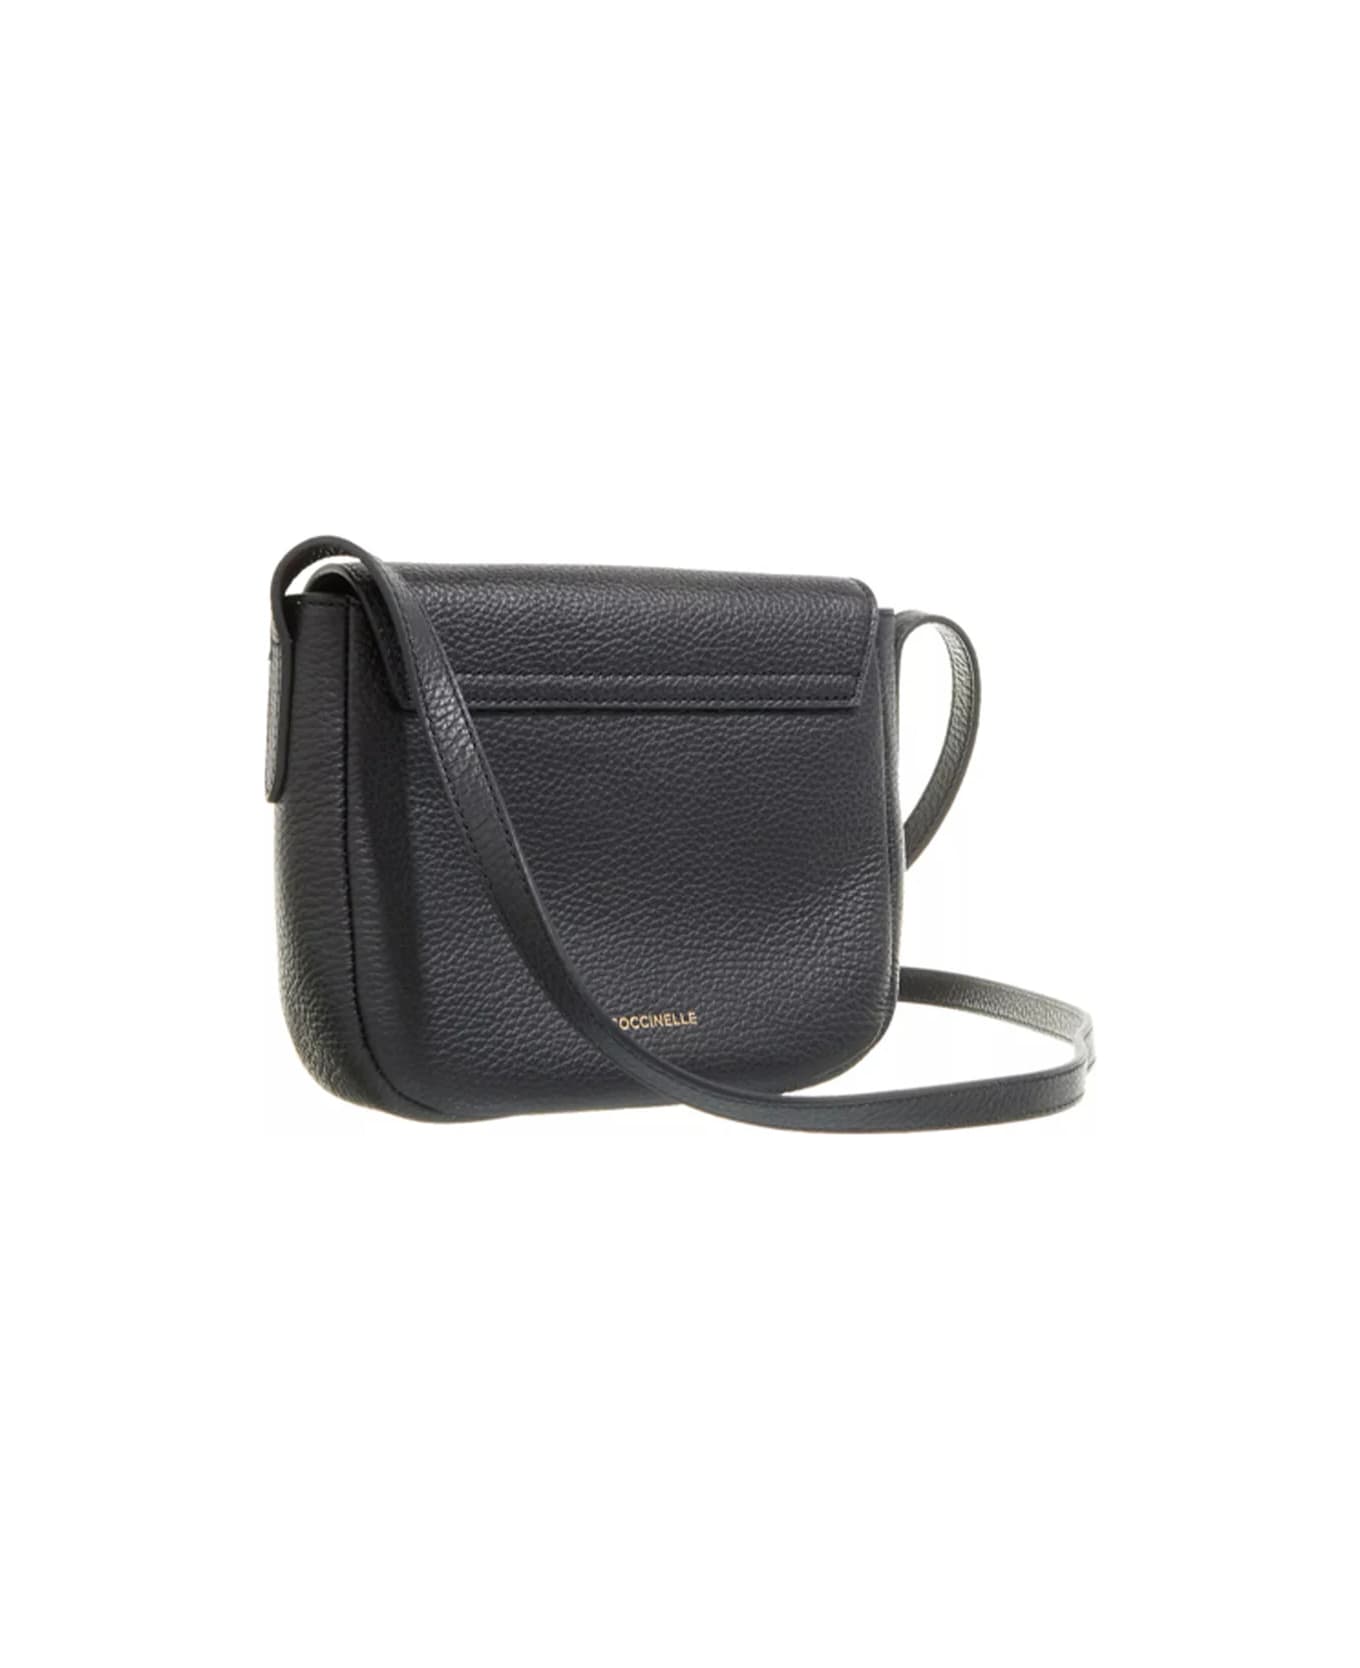 Coccinelle Arlettis Bag With Shoulder Strap - Noir